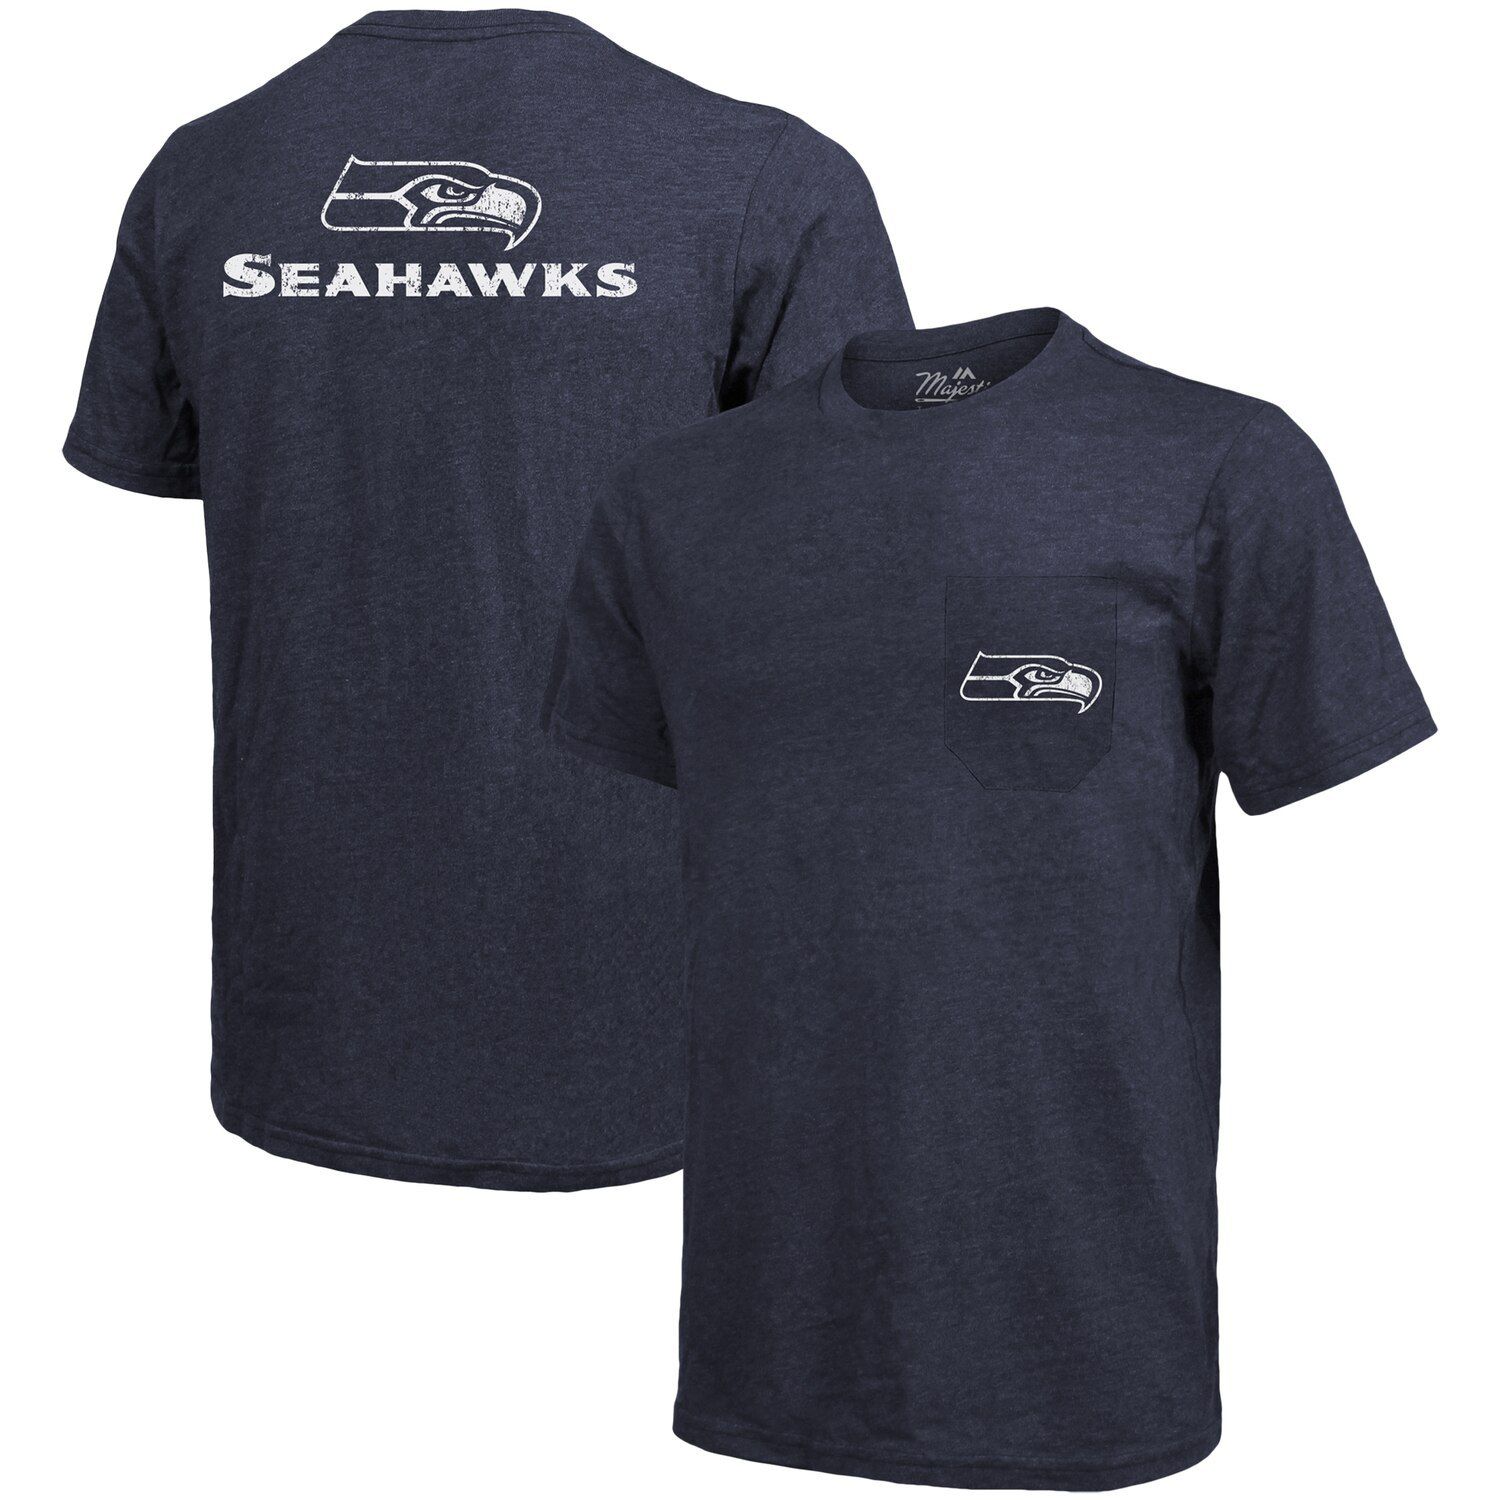 Футболка с карманами Tri-Blend Threads Seattle Seahawks Threads - Темно-синий Majestic футболка new england patriots threads с карманами tri blend темно синий с меланжевым отливом majestic